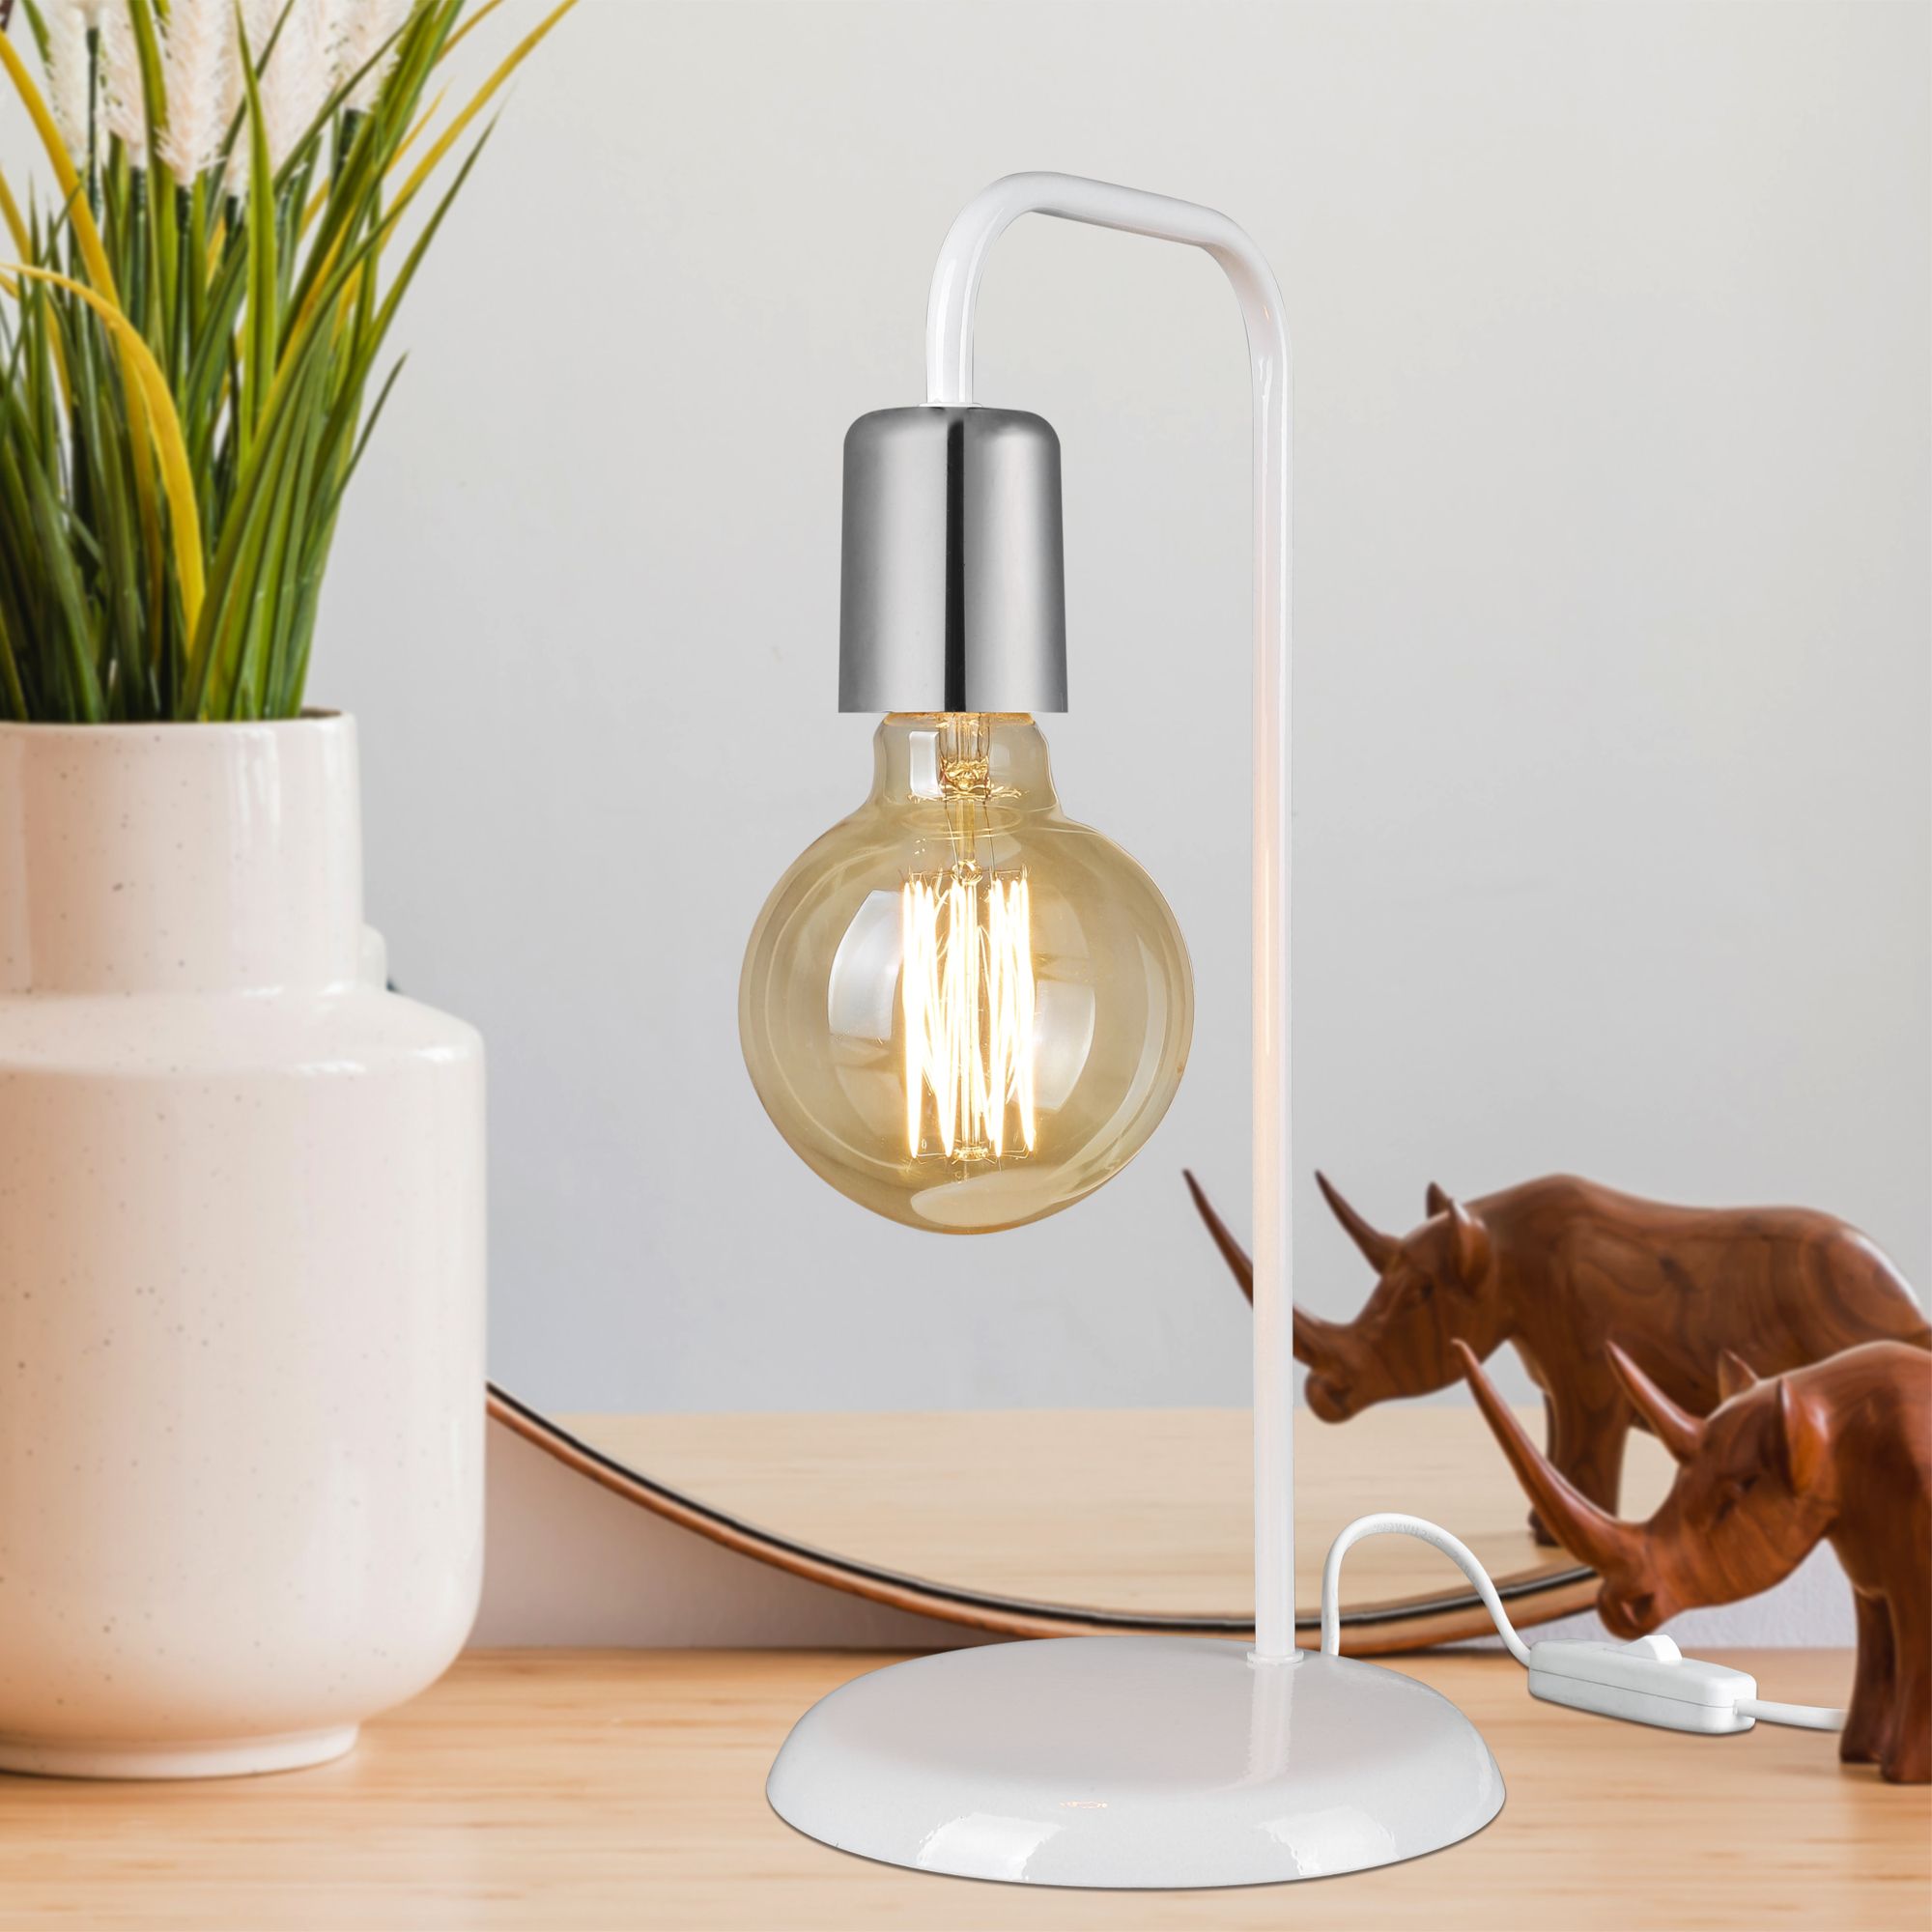 Tischlampen - Stilvolle Beleuchtung für jeden Raum | premiumXL